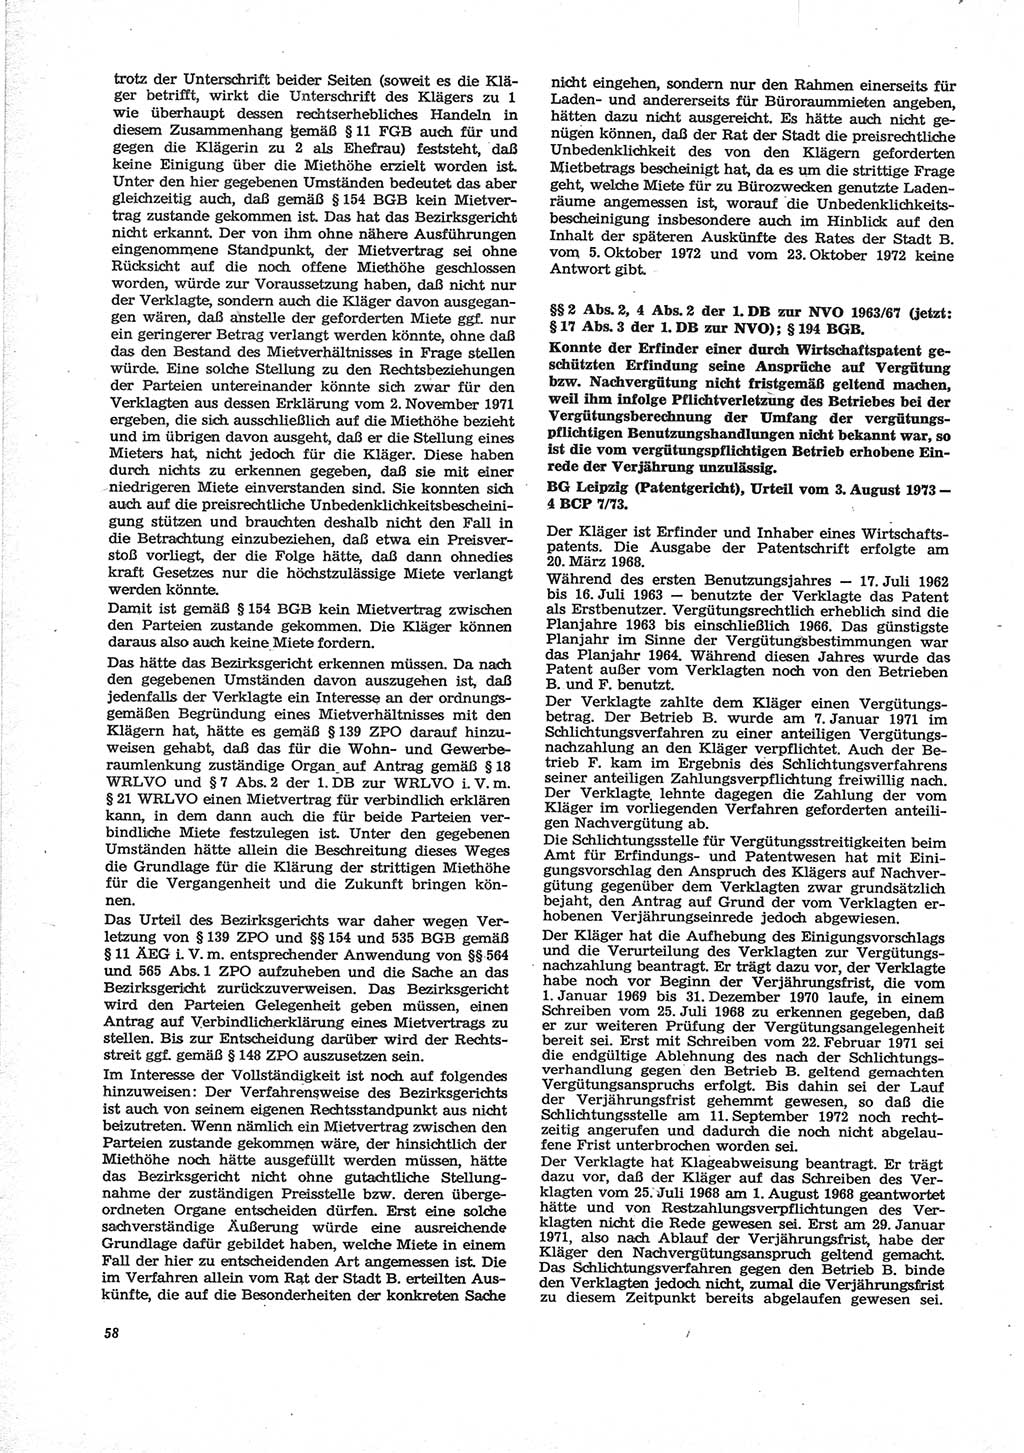 Neue Justiz (NJ), Zeitschrift für Recht und Rechtswissenschaft [Deutsche Demokratische Republik (DDR)], 28. Jahrgang 1974, Seite 58 (NJ DDR 1974, S. 58)